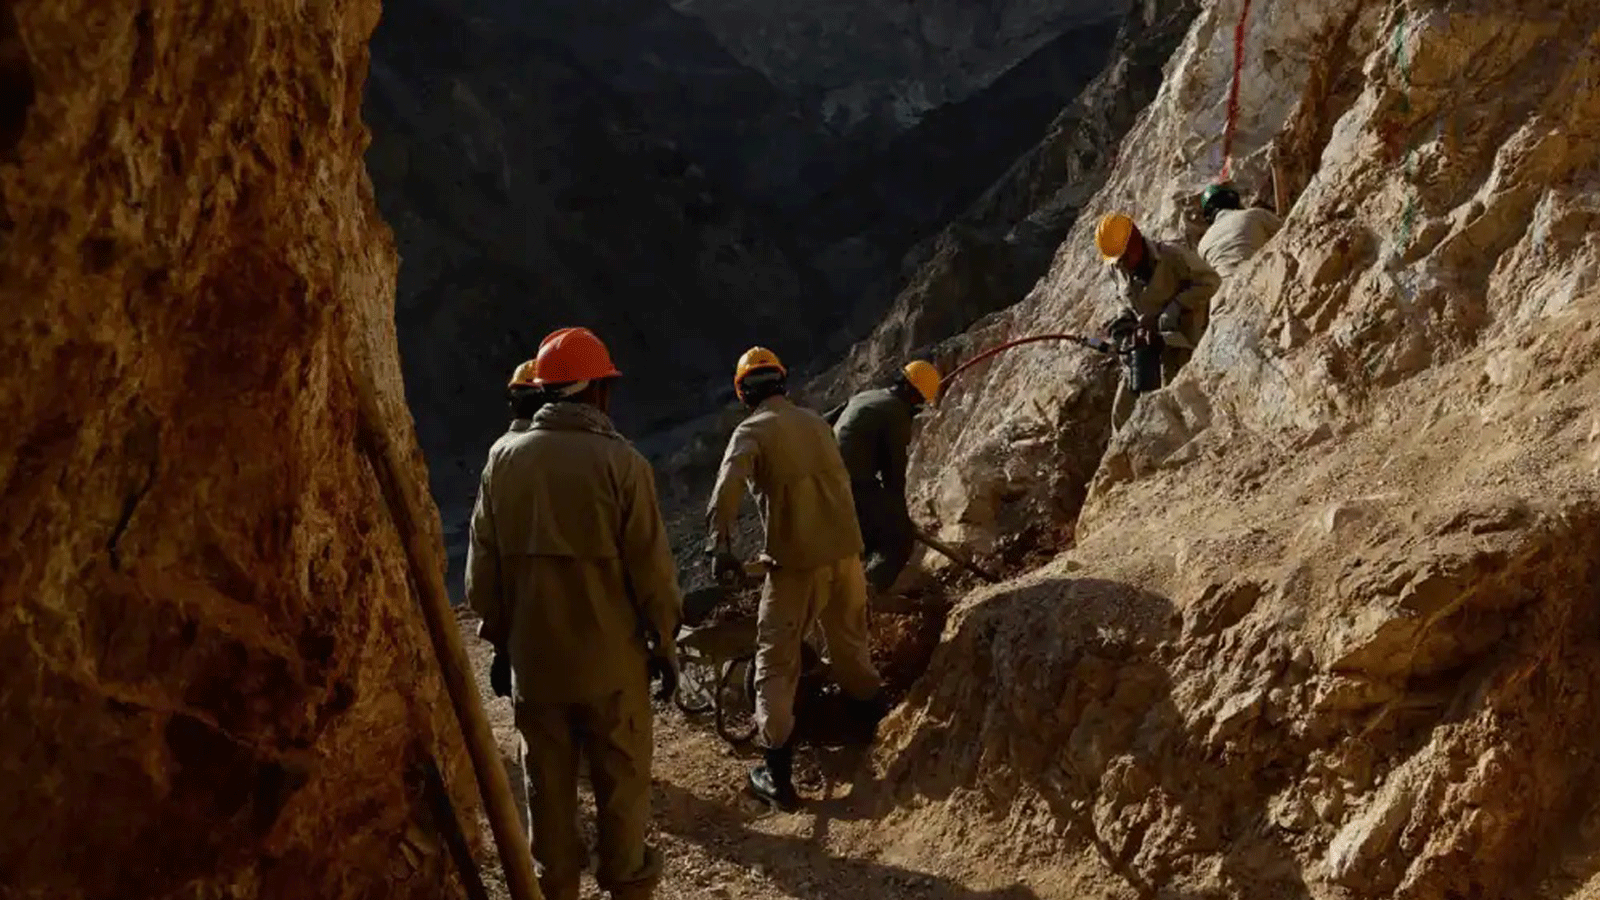 عمال مناجم أفغان يعملون في منجم ذهب على سفح جبل بالقرب من قرية قره زغان في ولاية بغلان.